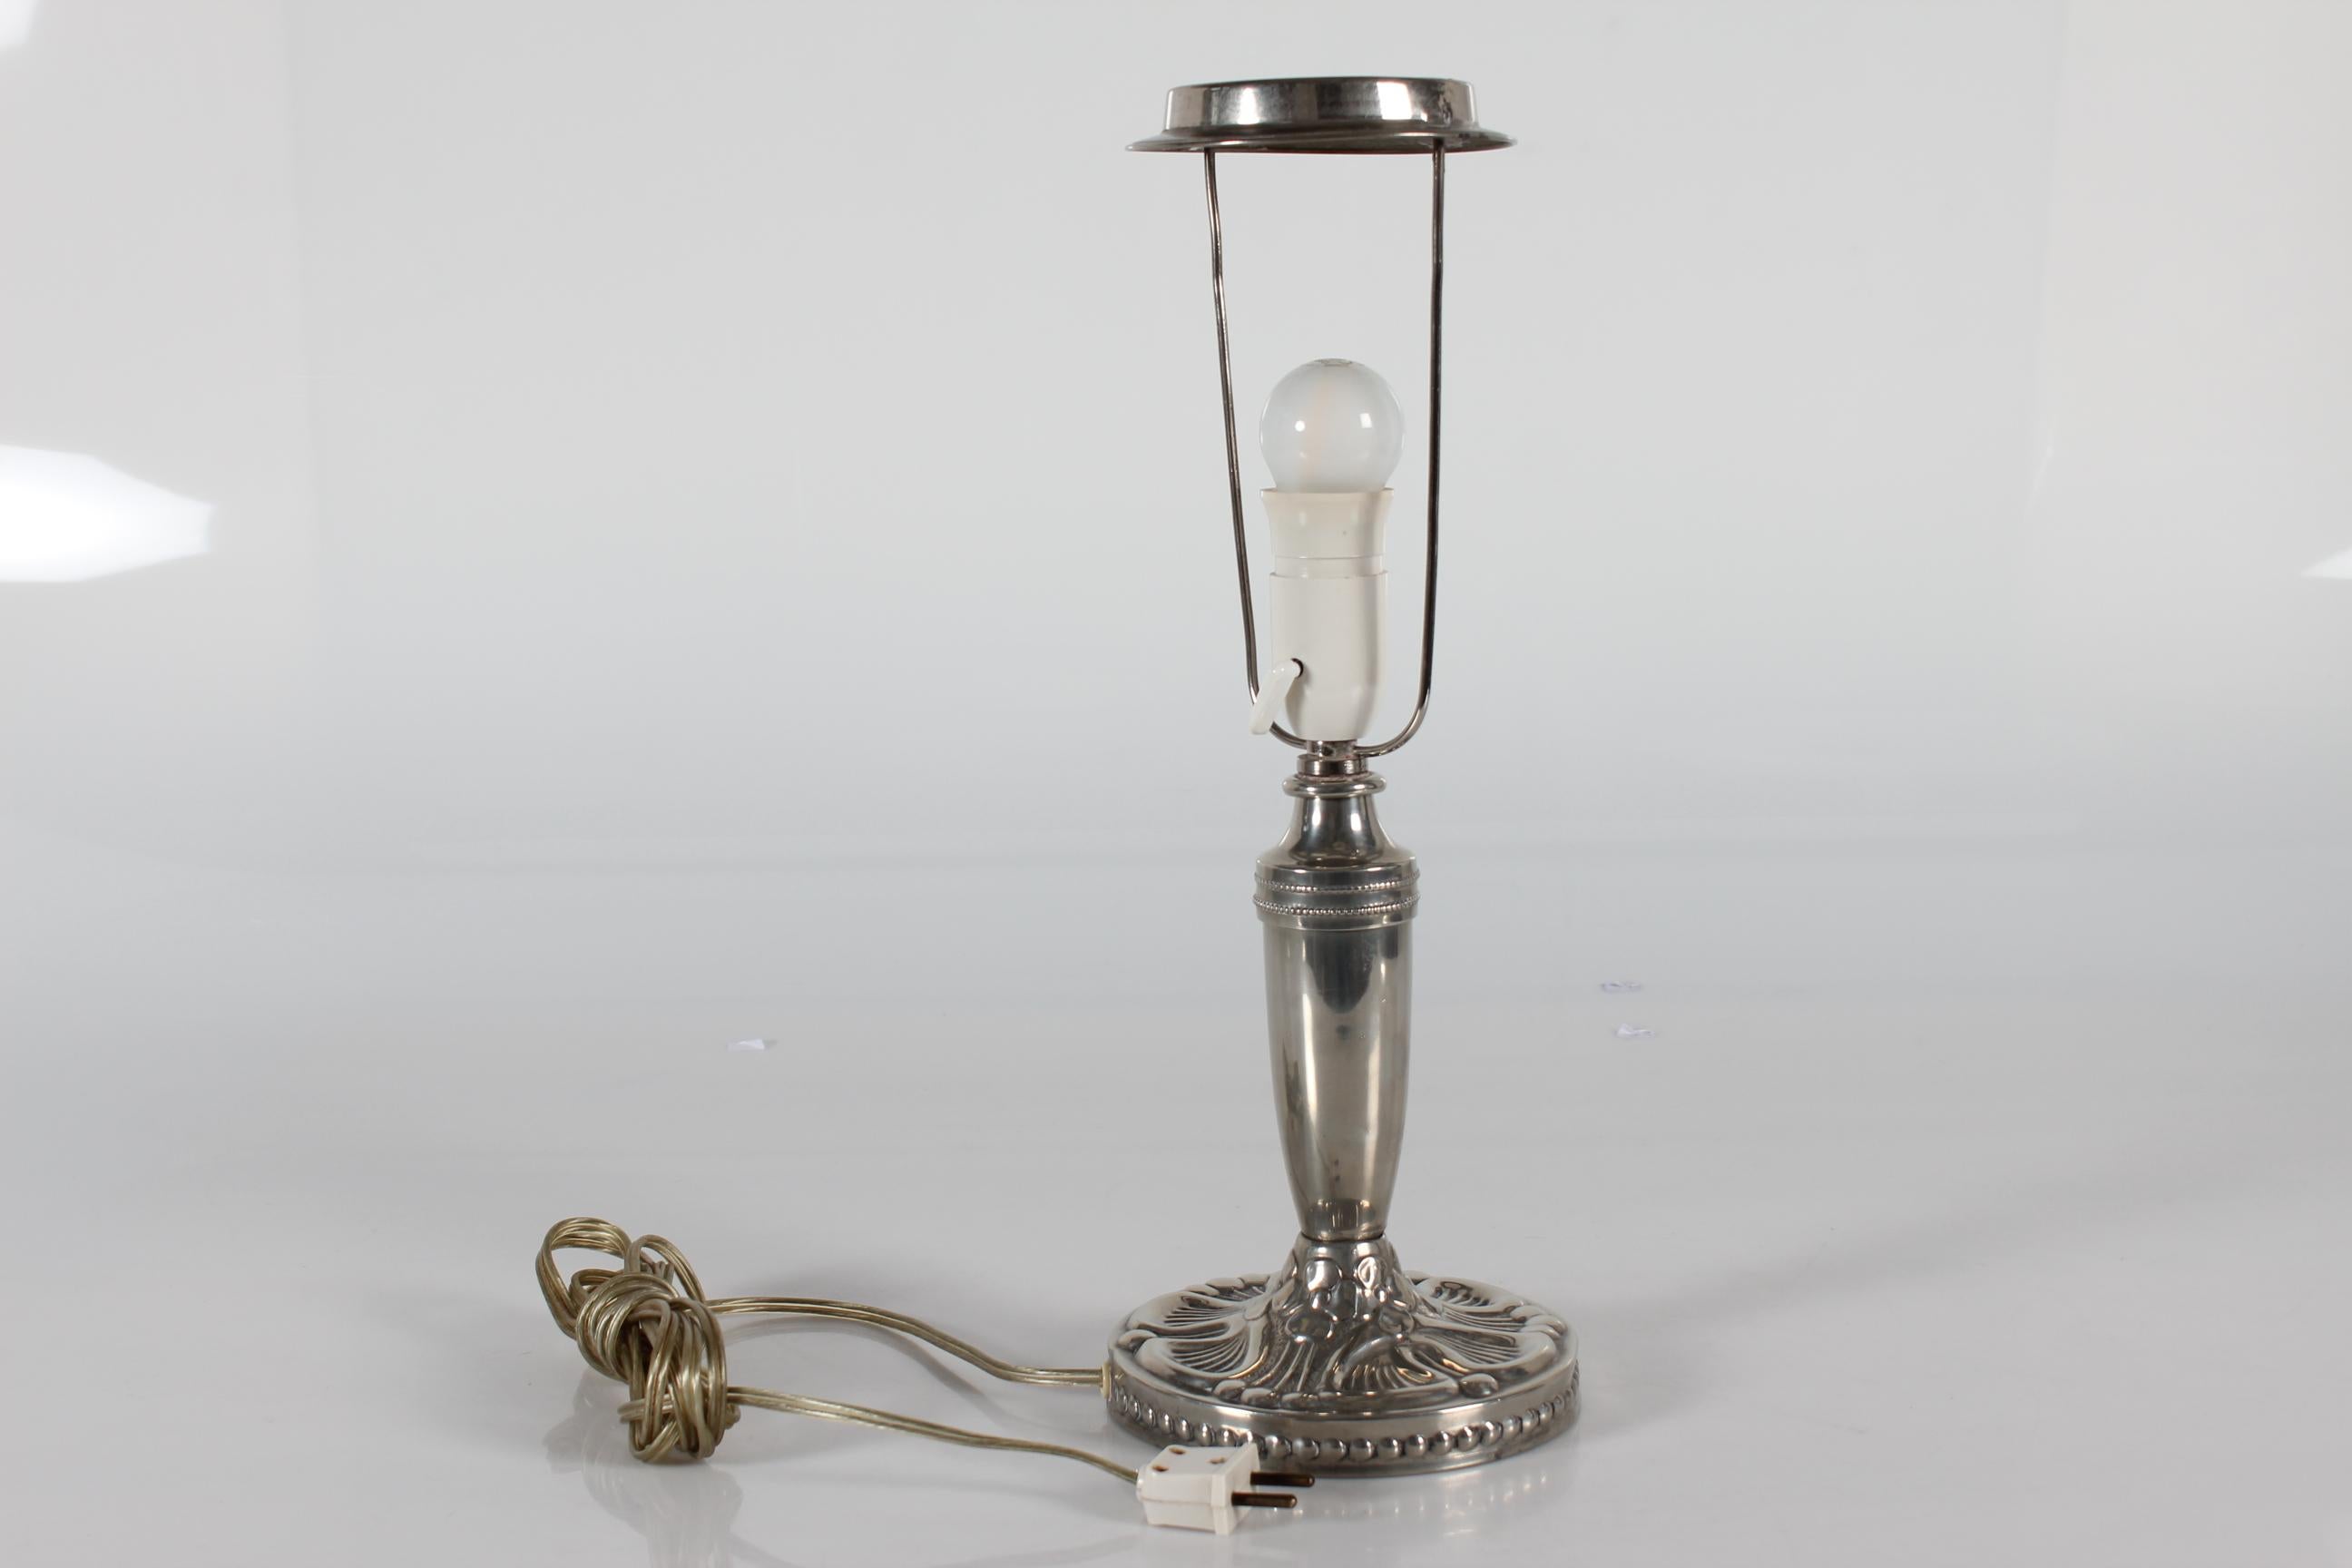 Lampe de table danoise Art Nouveau en étain avec motif floral.

La lampe a été fabriquée au Danemark dans les années 1920-1930. 

Un nouvel abat-jour conçu au Danemark est inclus. Il est fait d'une étoffe tissée avec une certaine texture et il